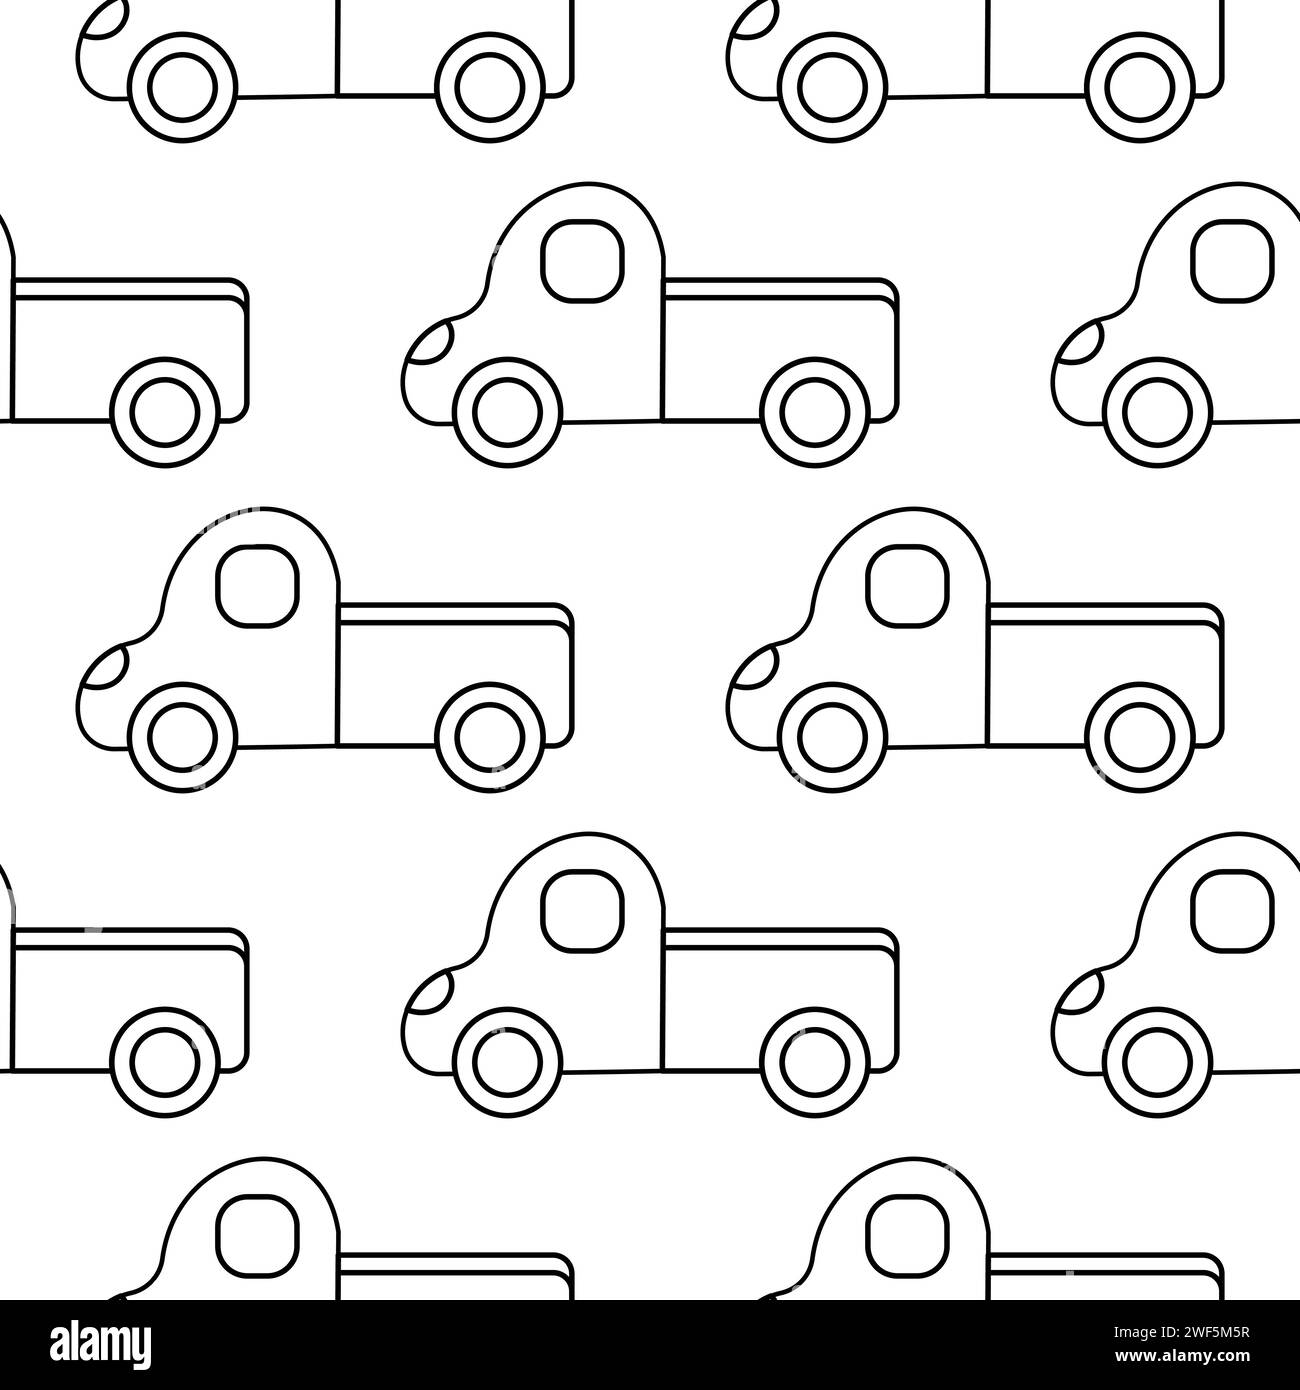 Auto Truck Spielzeug Kindertagskindergarten farbiges Muster Textillinie Kritzelei Stock Vektor